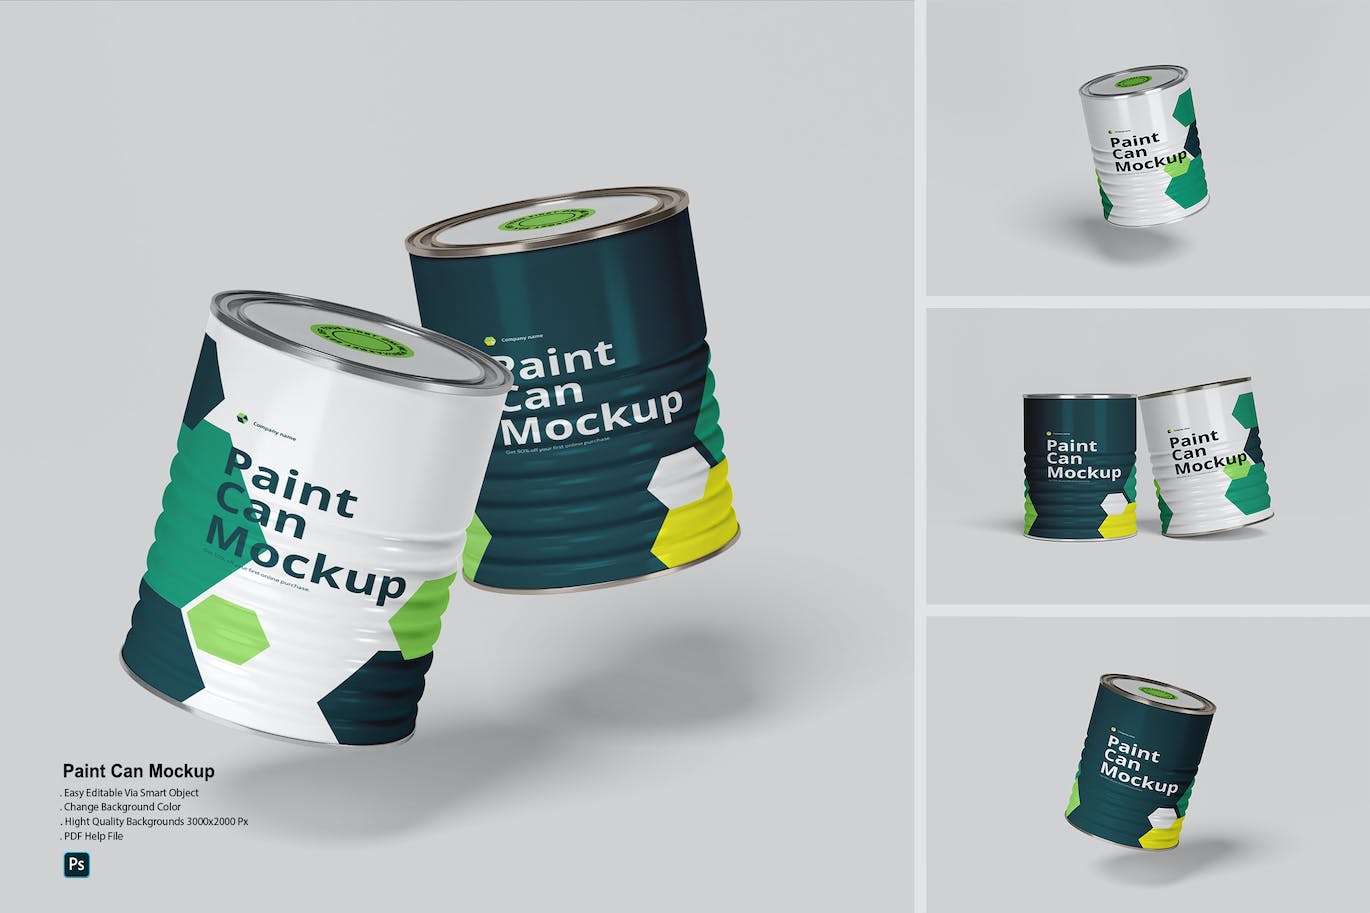 油漆罐/桶包装设计样机 (PDF,PSD)